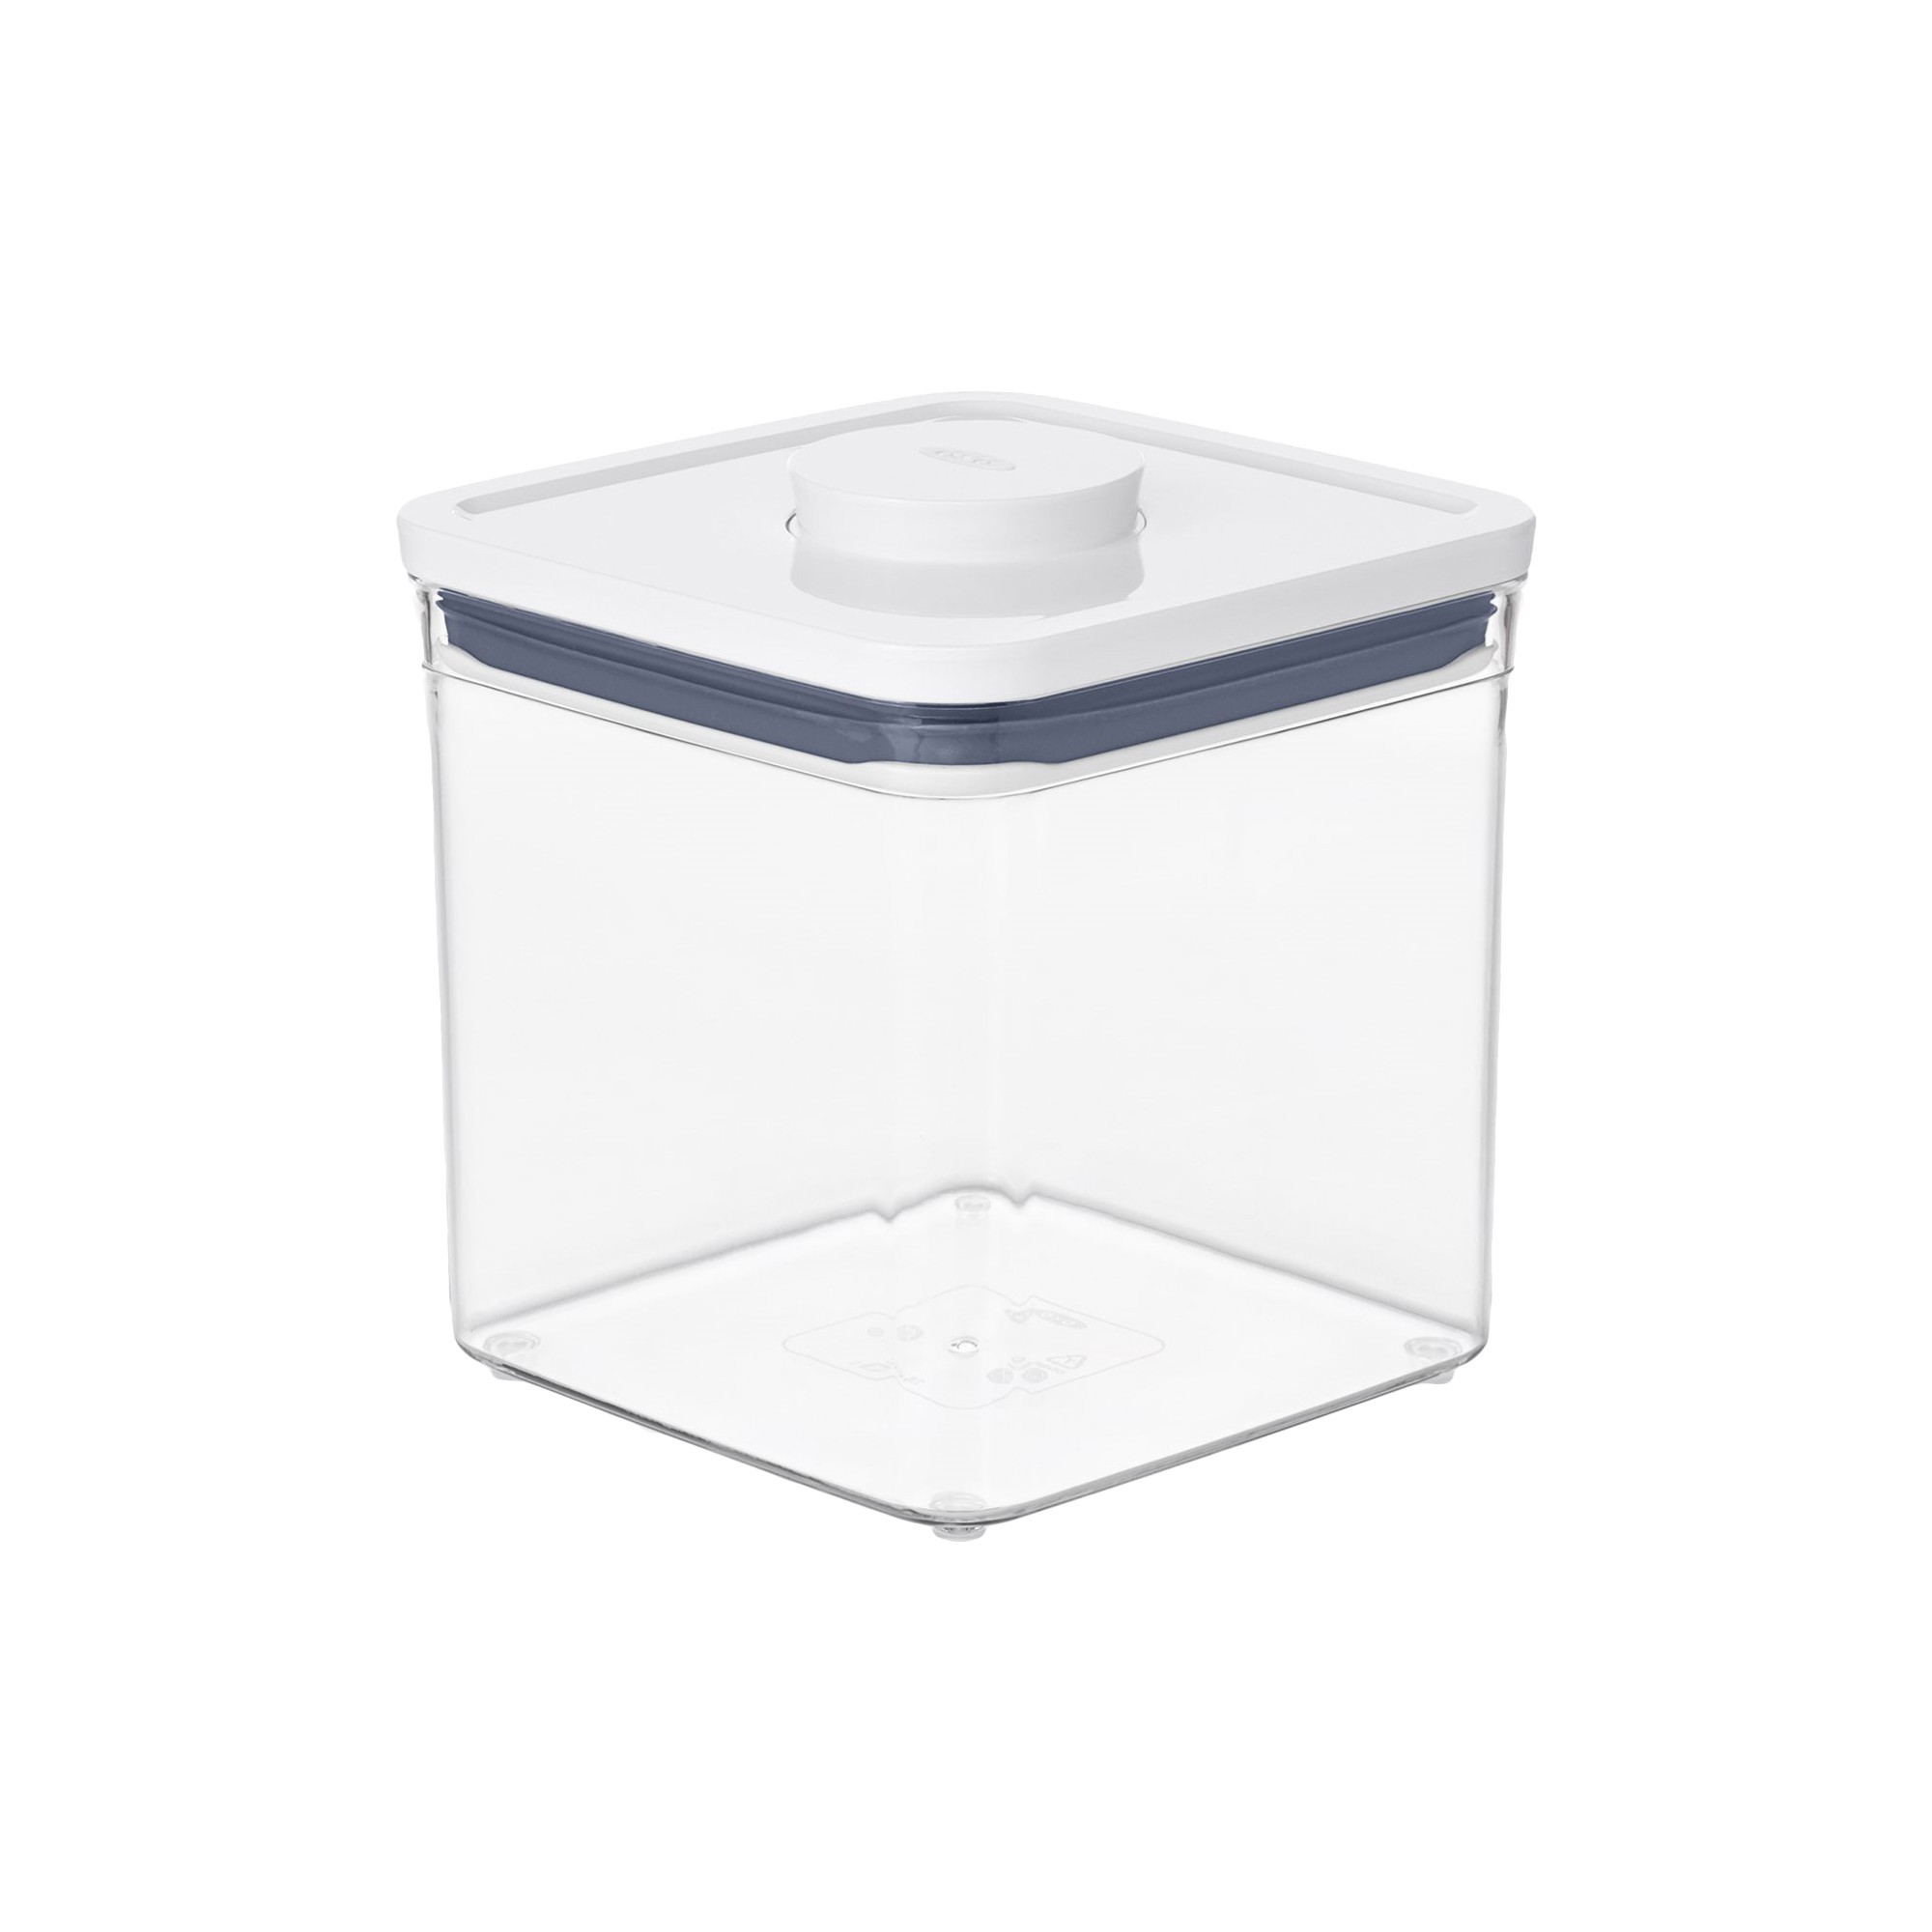 Boîte de rangement plastique pour réfrigérateur 2.6L - Longueur